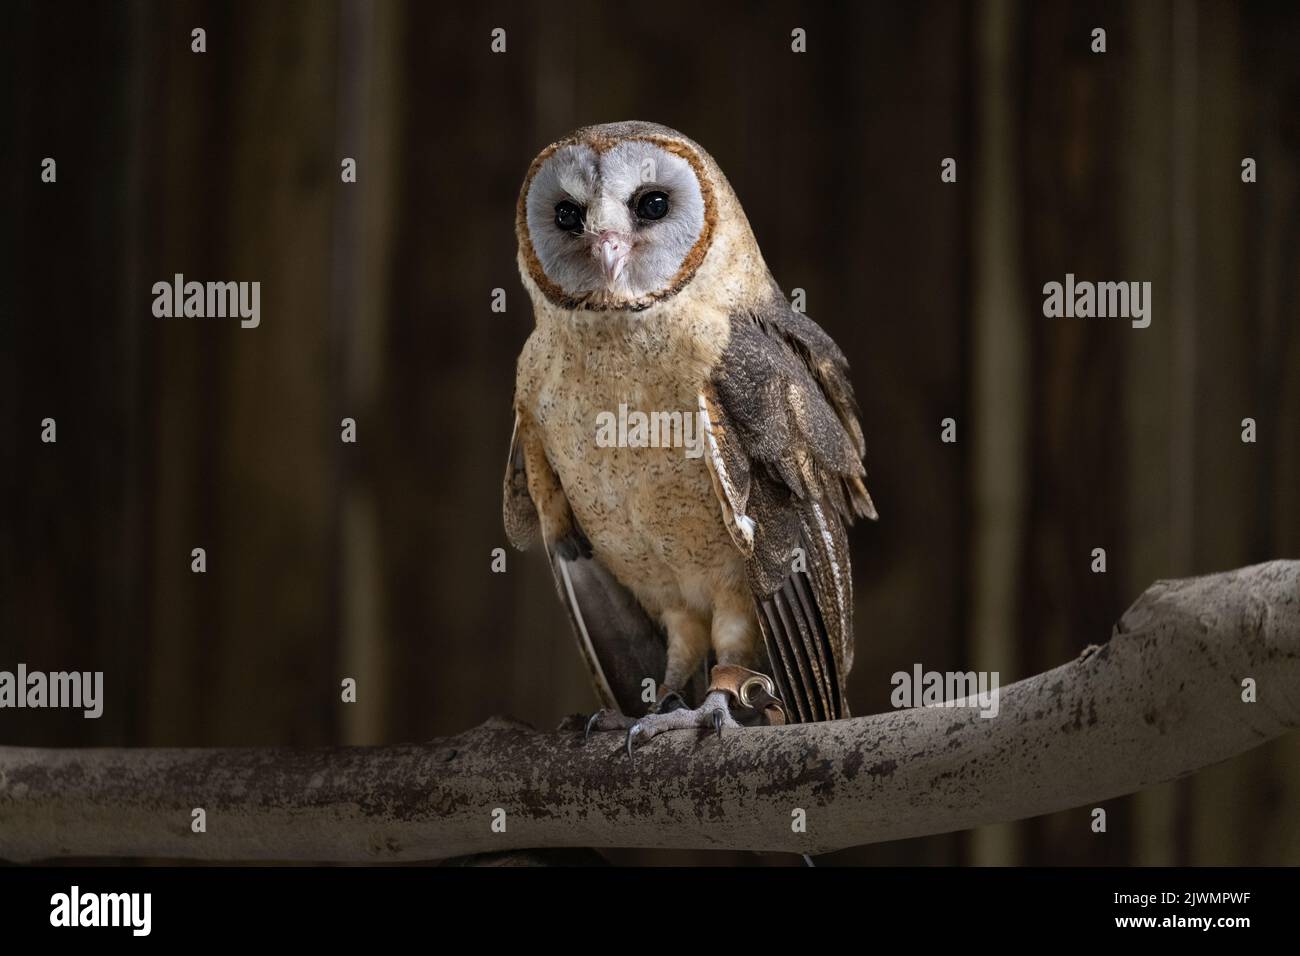 Ashey faced owl facing the camera Stock Photo